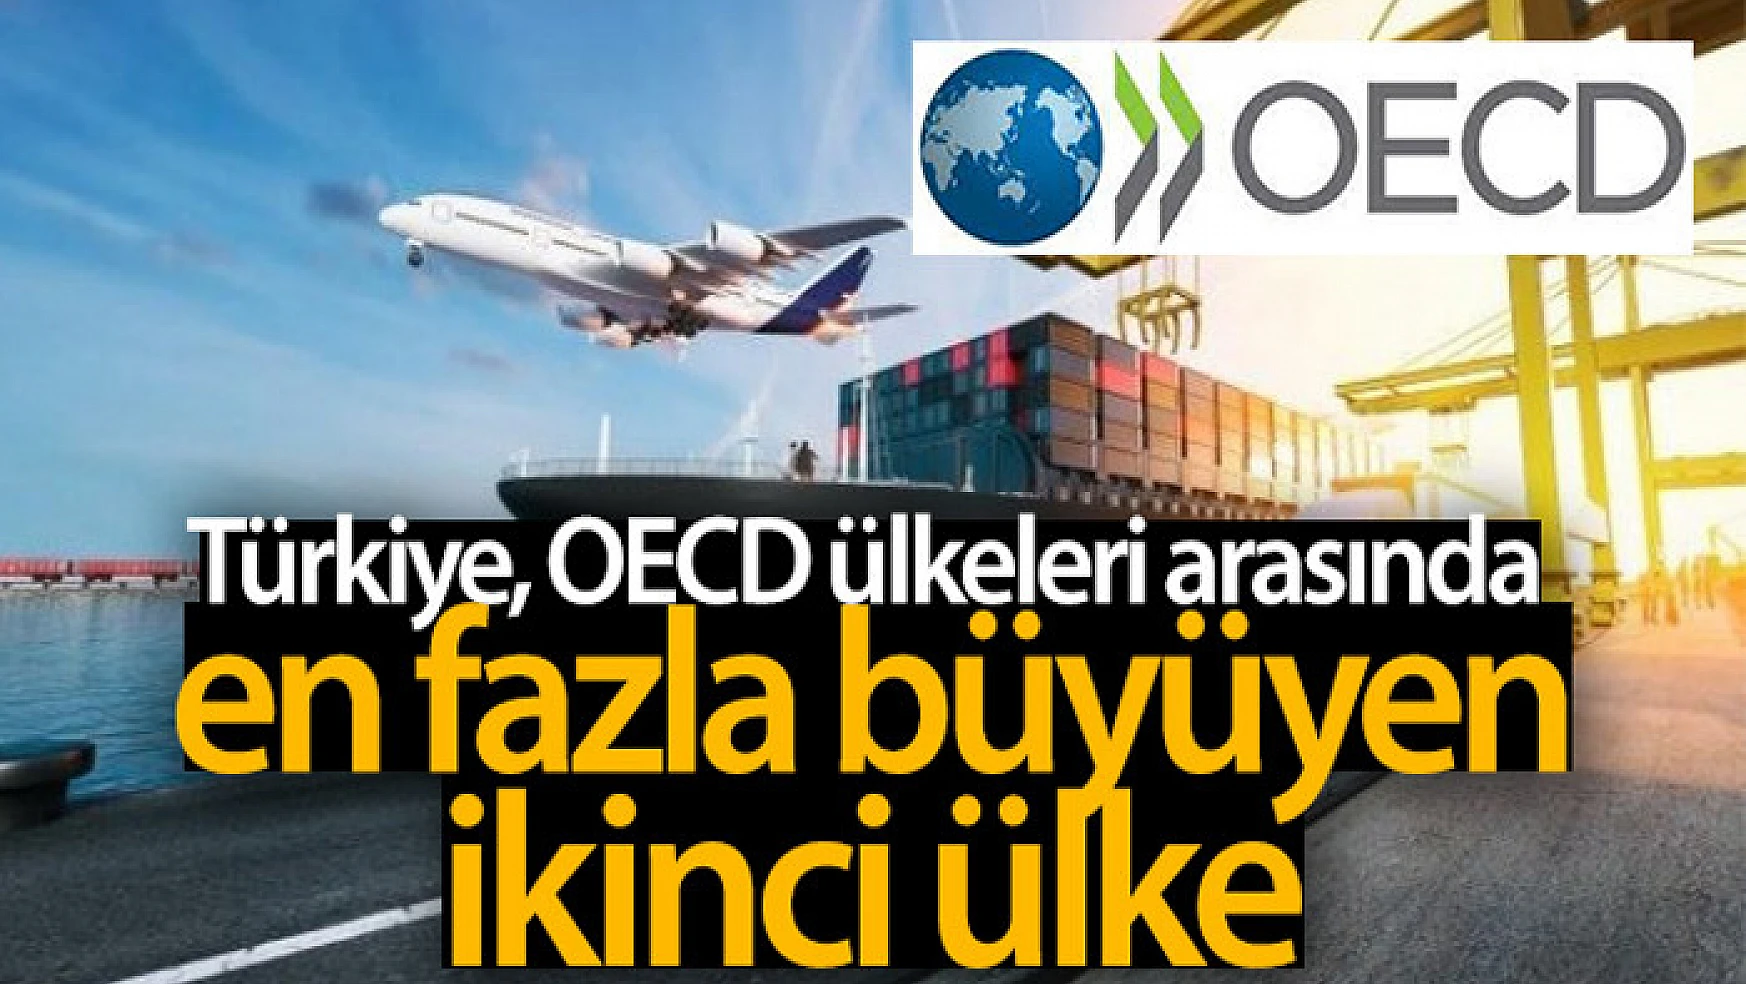 Türkiye OECD ülkeleri arasında en fazla büyüyen ikinci ülke oldu